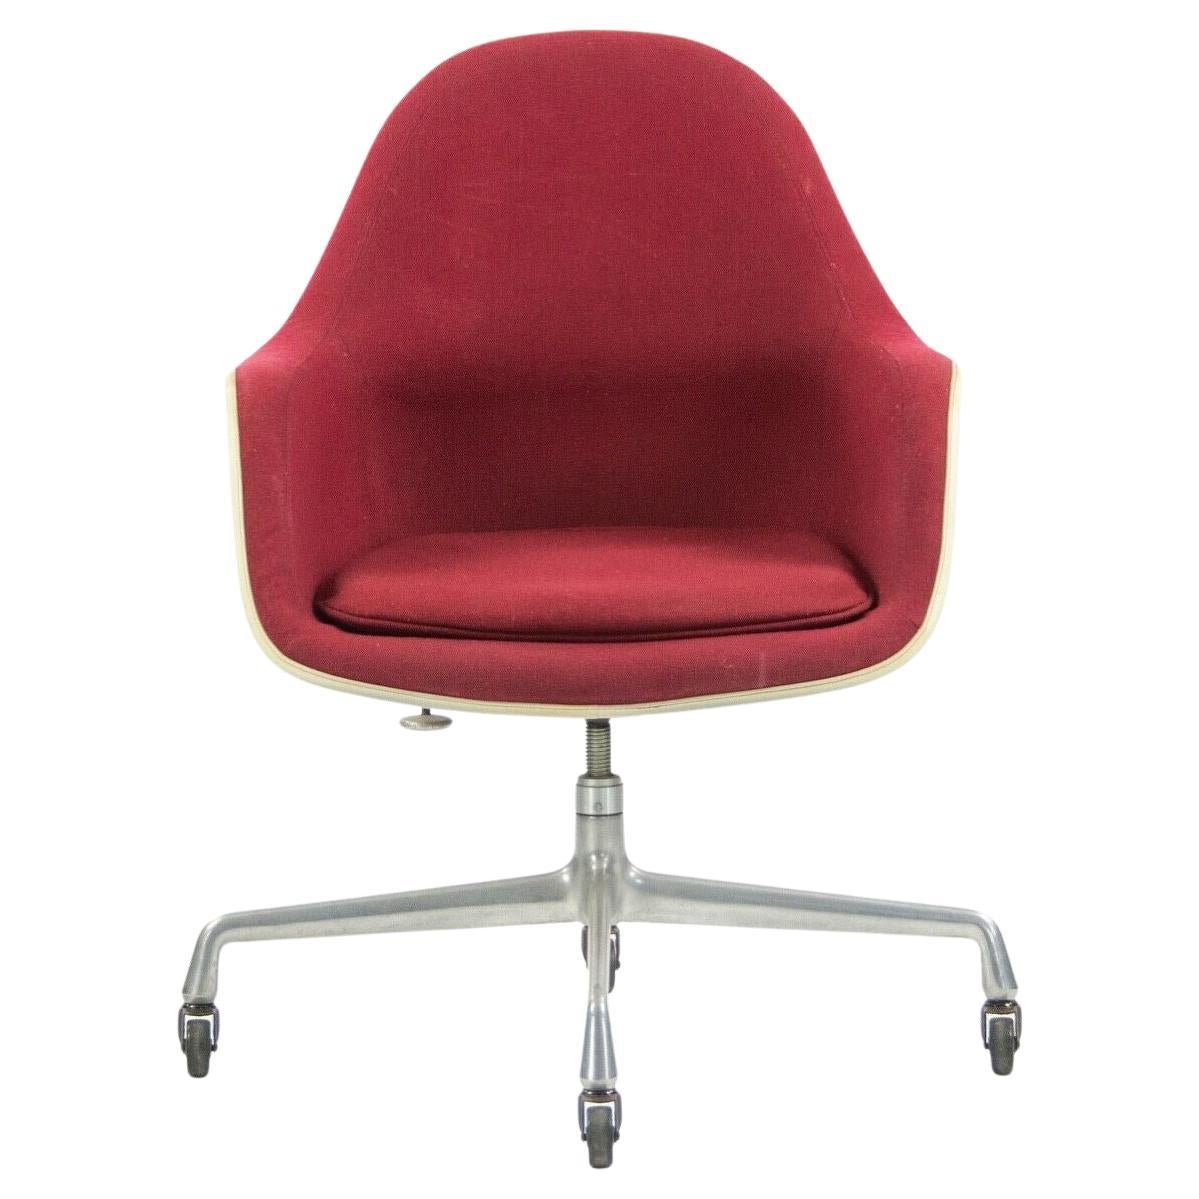 1977 Eames Herman Miller EC175 Upholstered Fiberglass Shell Chair For Sale